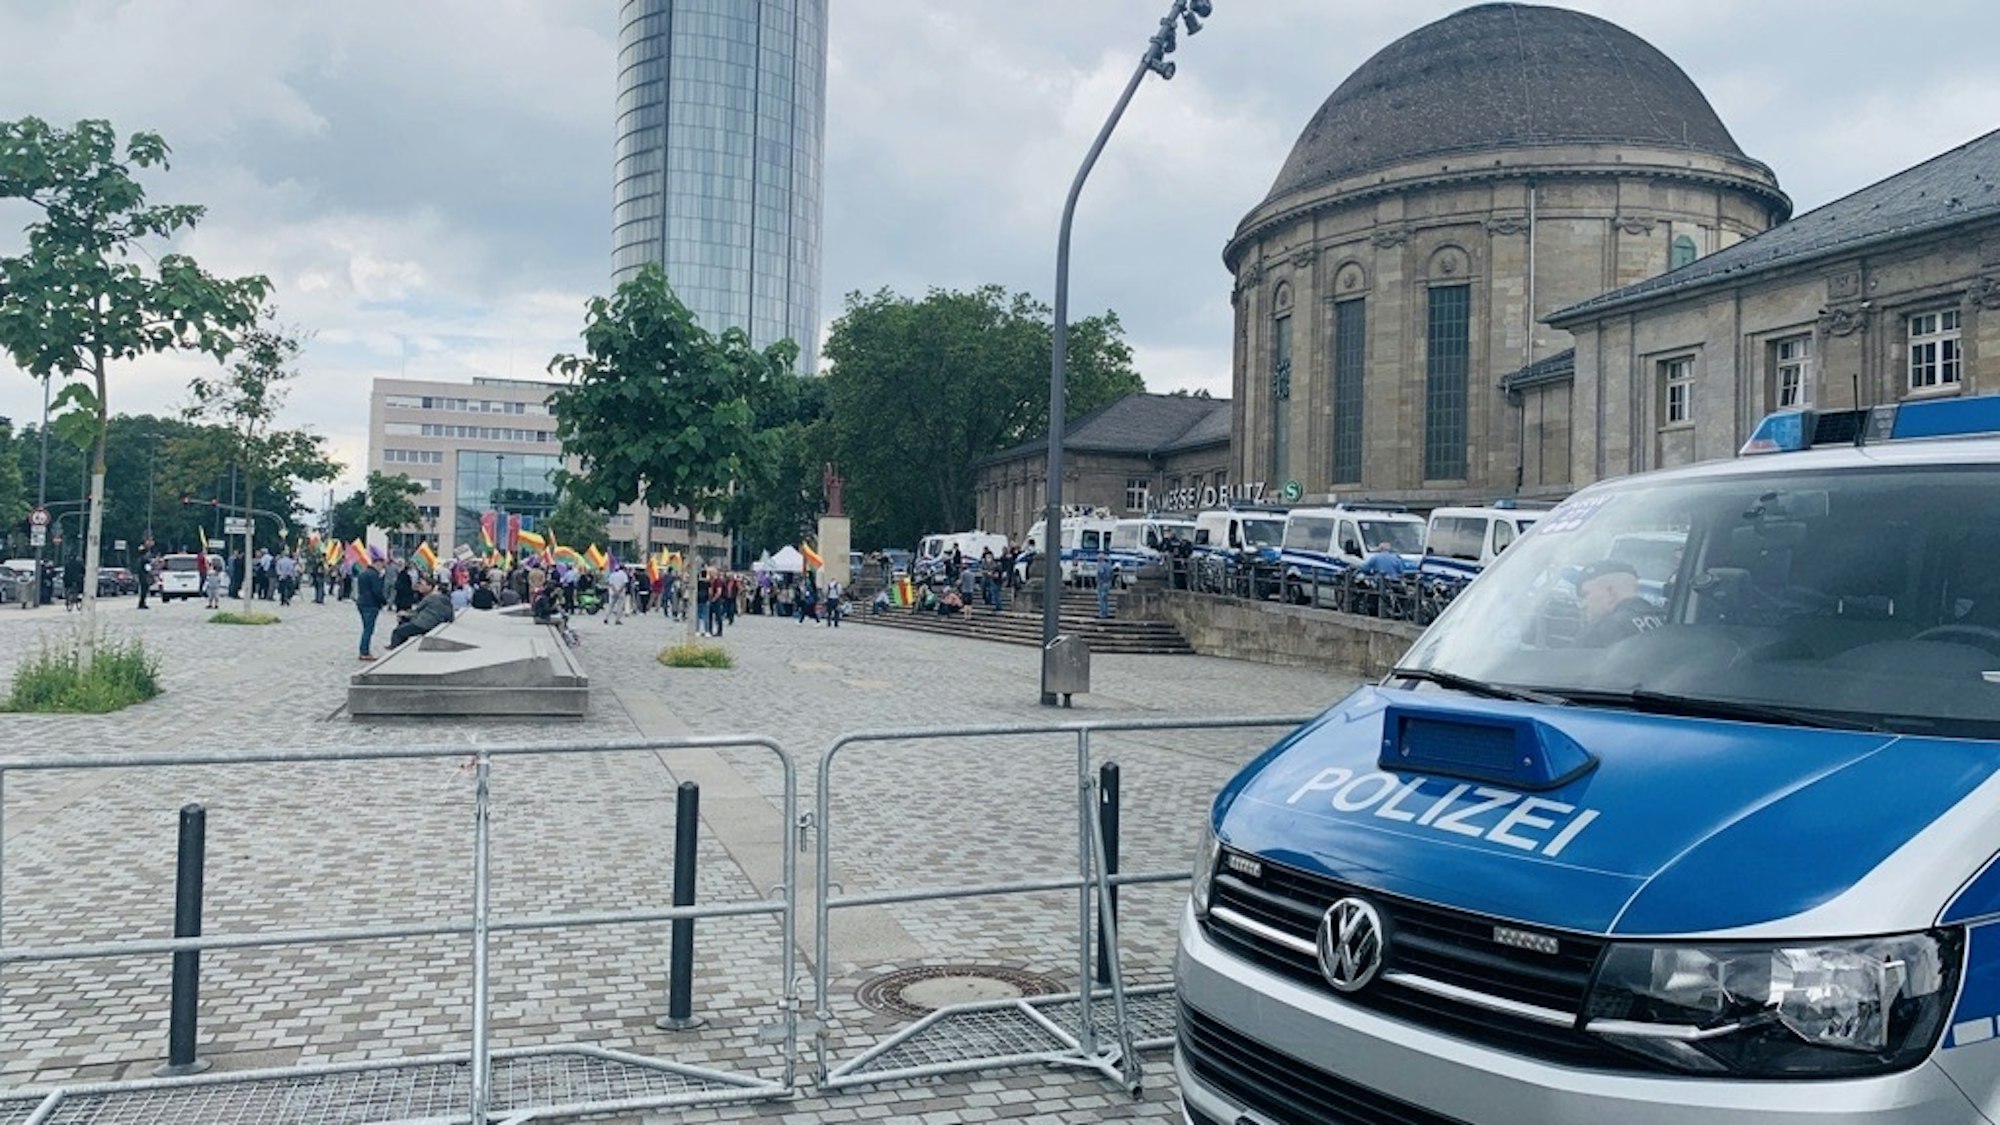 Ein Wagen der Kölner Polizei steht vor dem Deutzer Bahnhof. Im Hintergrund sind Demonstrierende zu sehen.